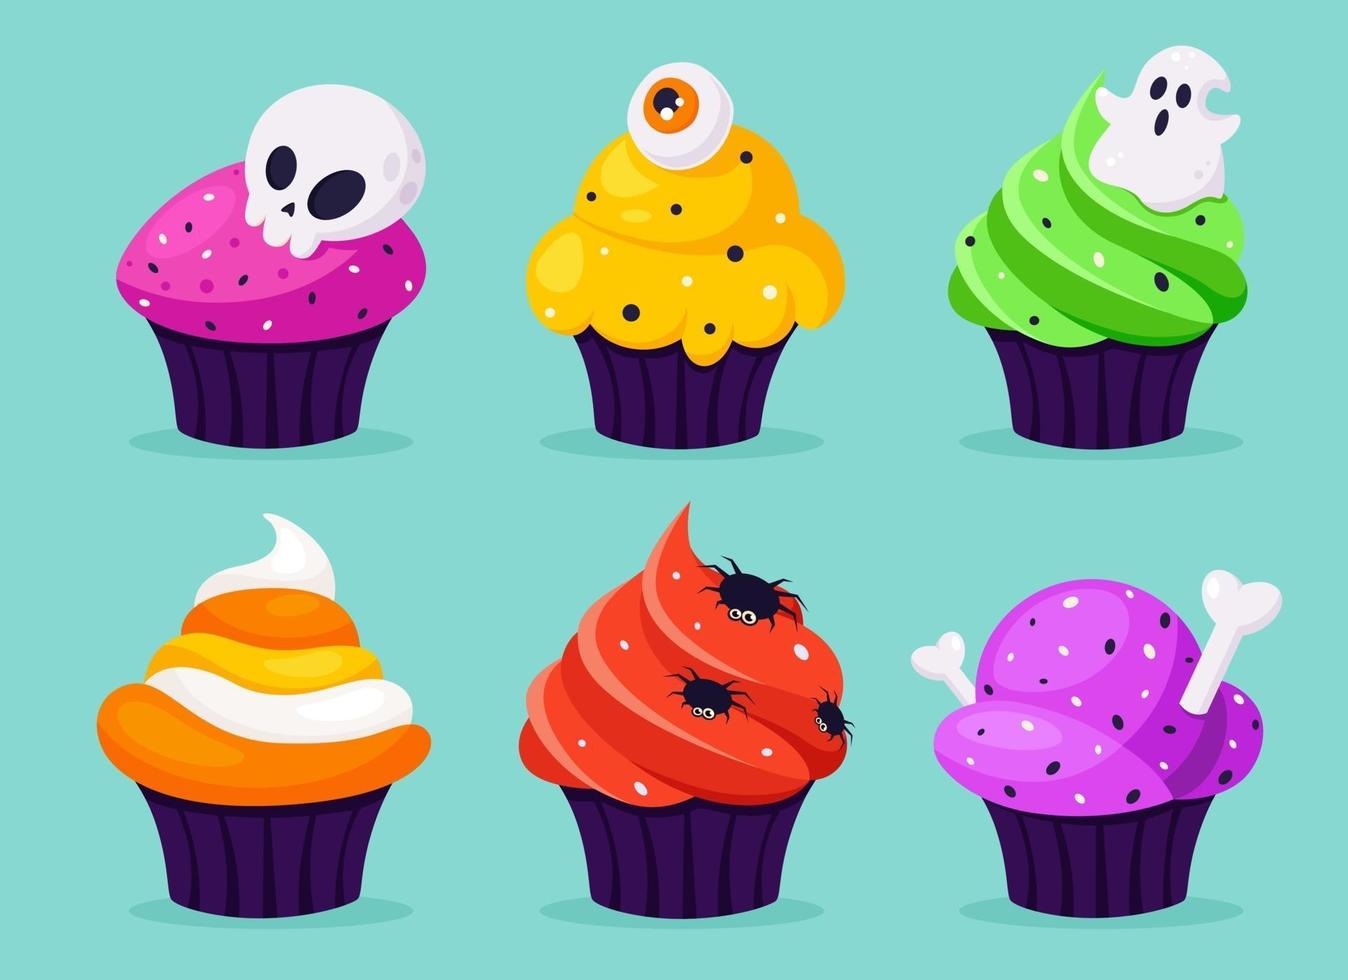 feliz Dia das Bruxas. cupcakes assustadores com olho, aranha, fantasma. ilustração vetorial em estilo simples. vetor